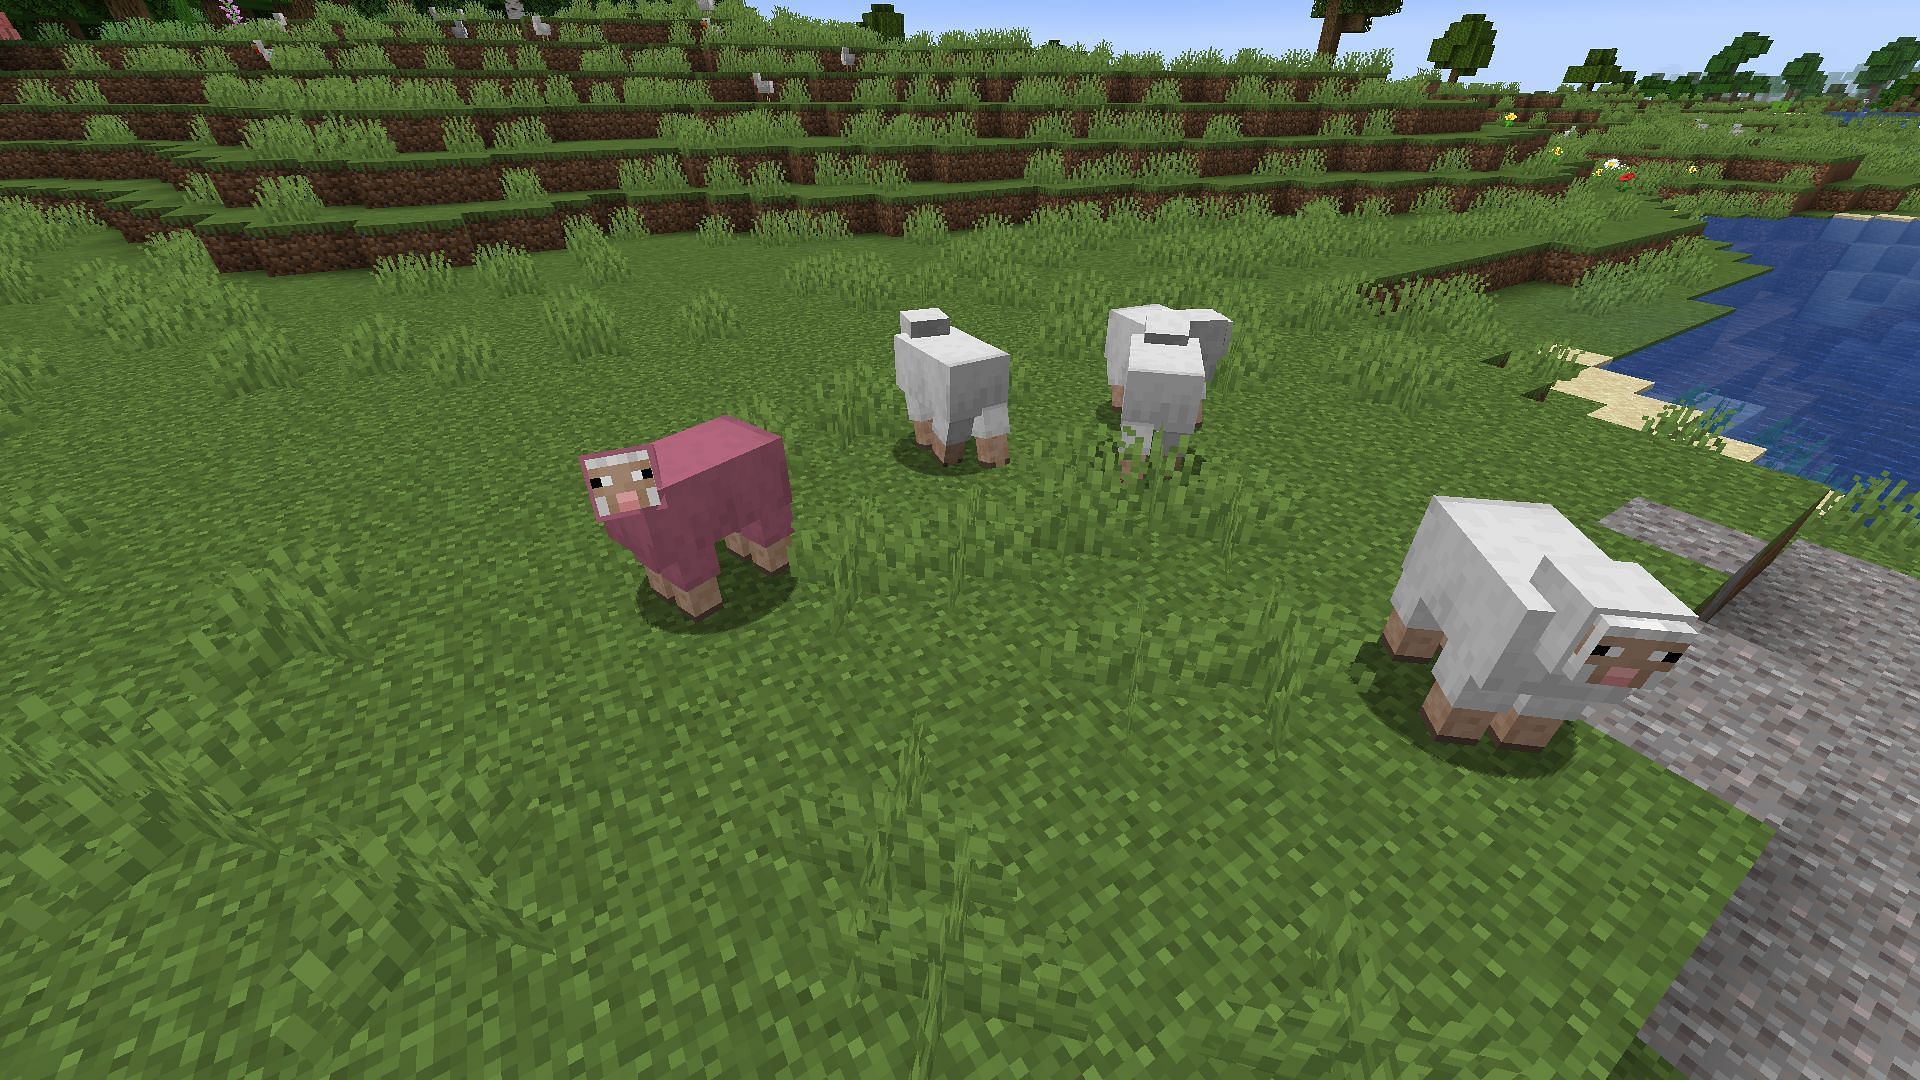 A rare natural pink sheep (Image via Mojang)